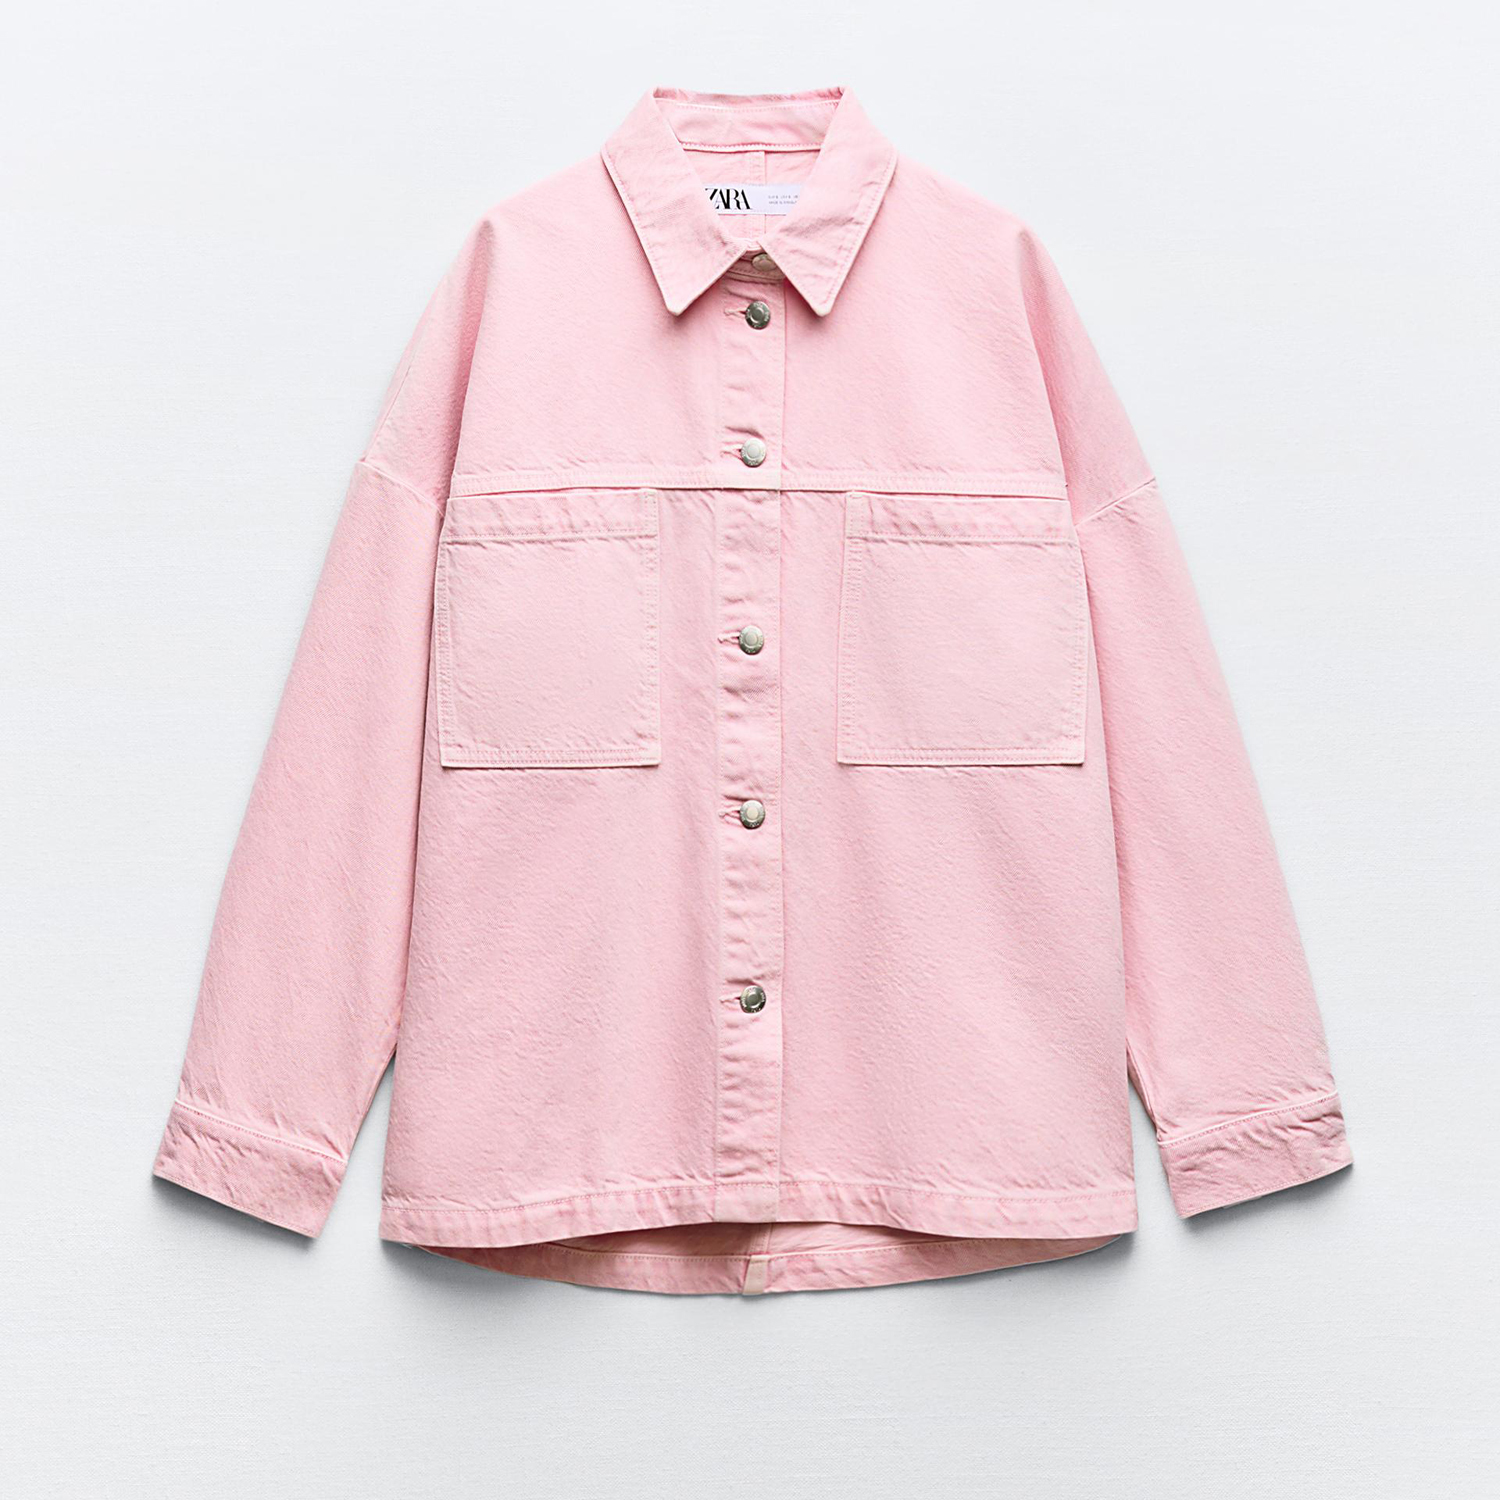 юбка zara textured with mesh pockets розовый Джинсовая куртка Zara Z1975 With Patch Pockets, розовый